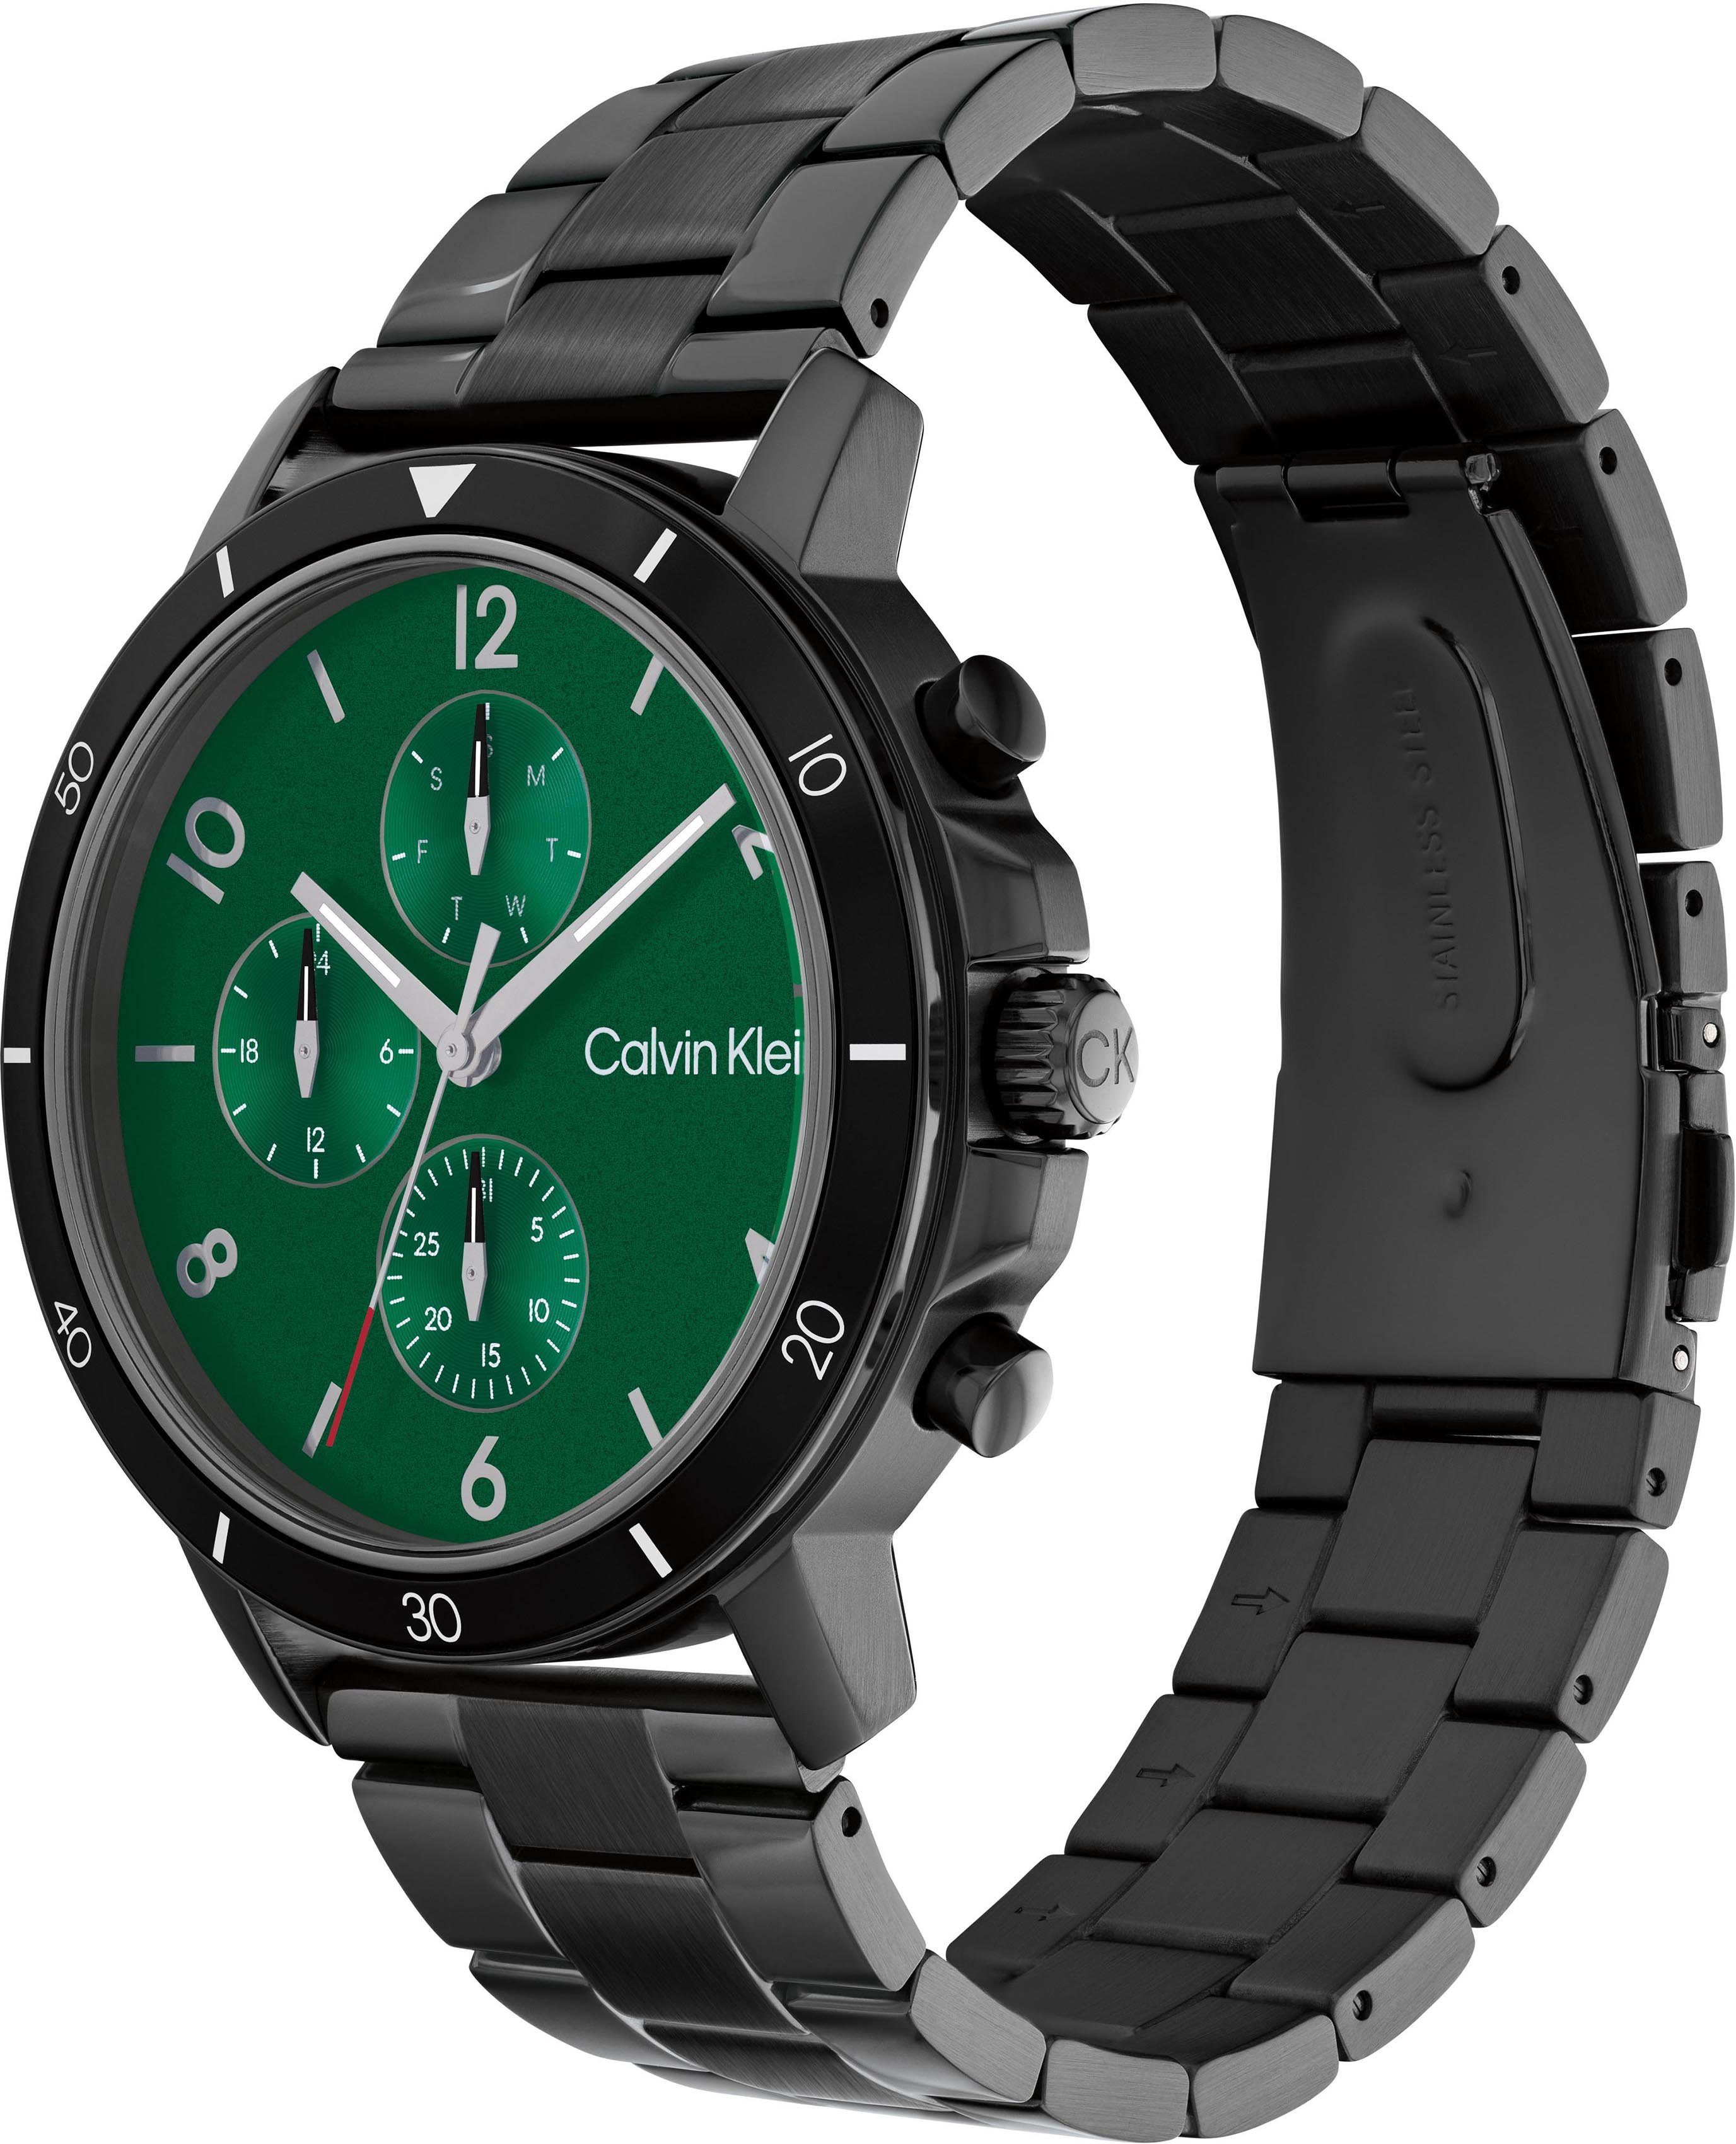 Herren Uhren Calvin Klein Multifunktionsuhr Gauge Sport, 25200069